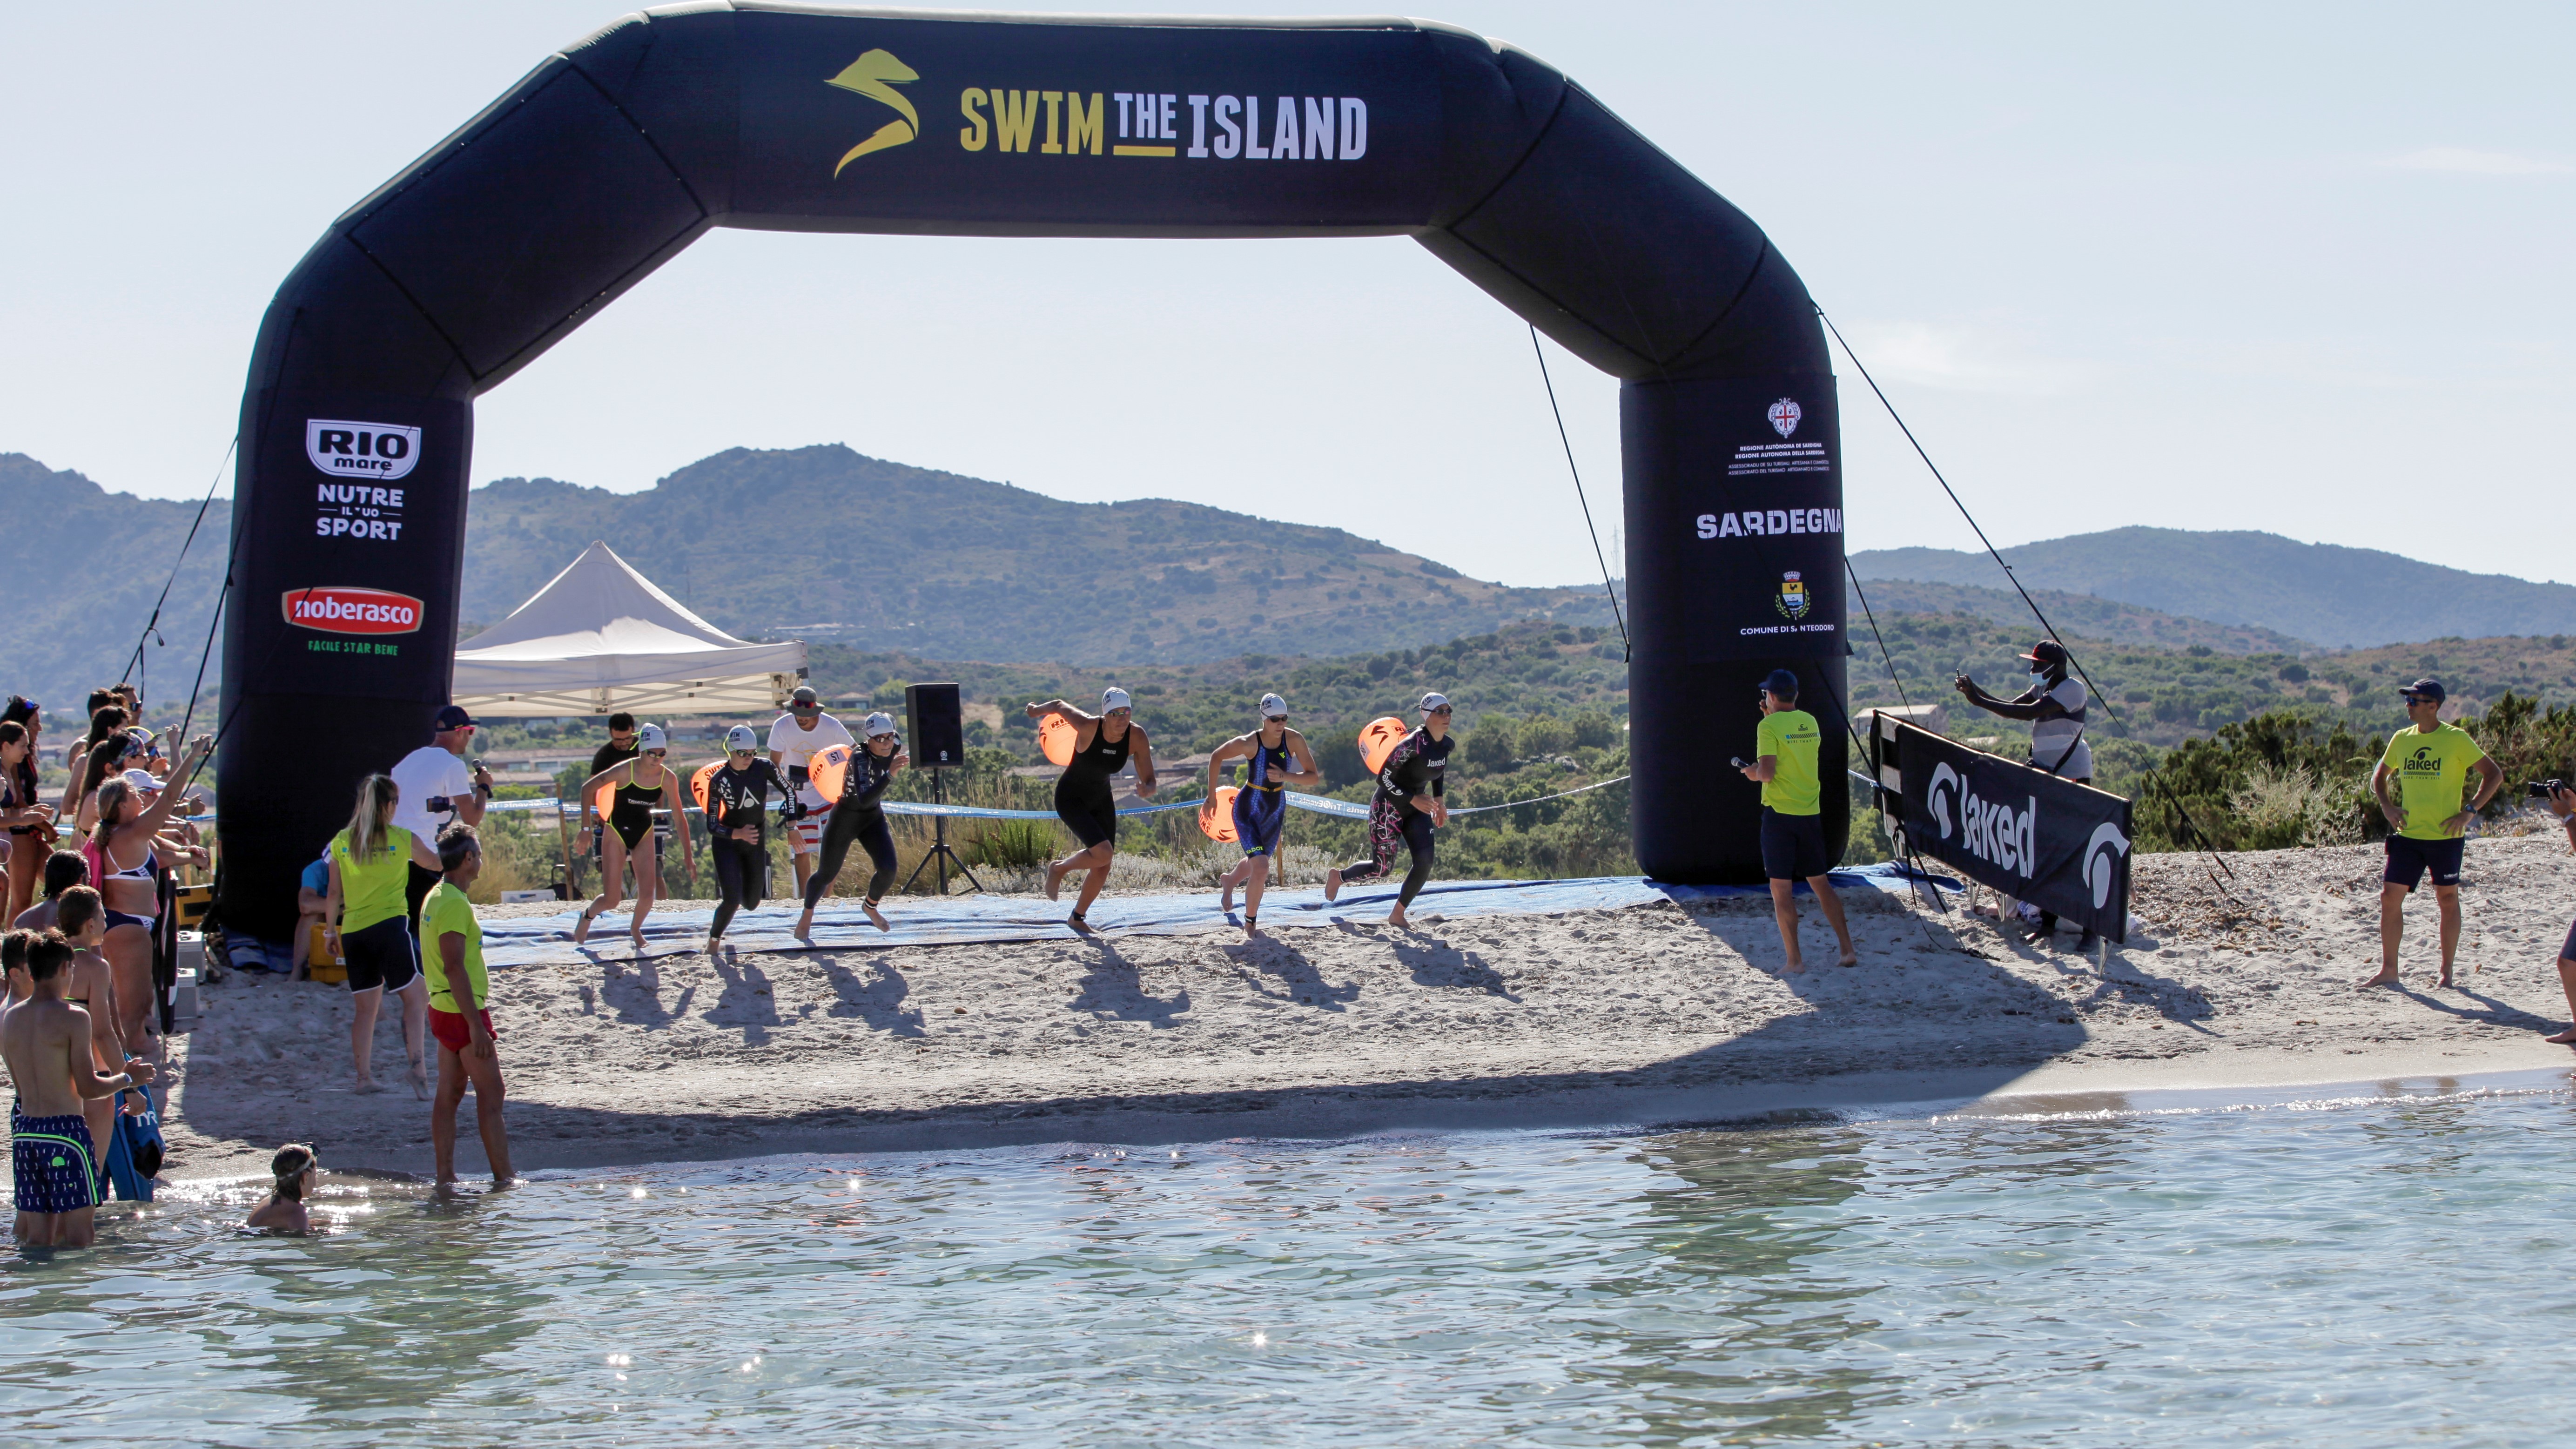 Swimtheisland Sardegna - San Teodoro: Savia e Gigli i campioni dello Sprint Challenge